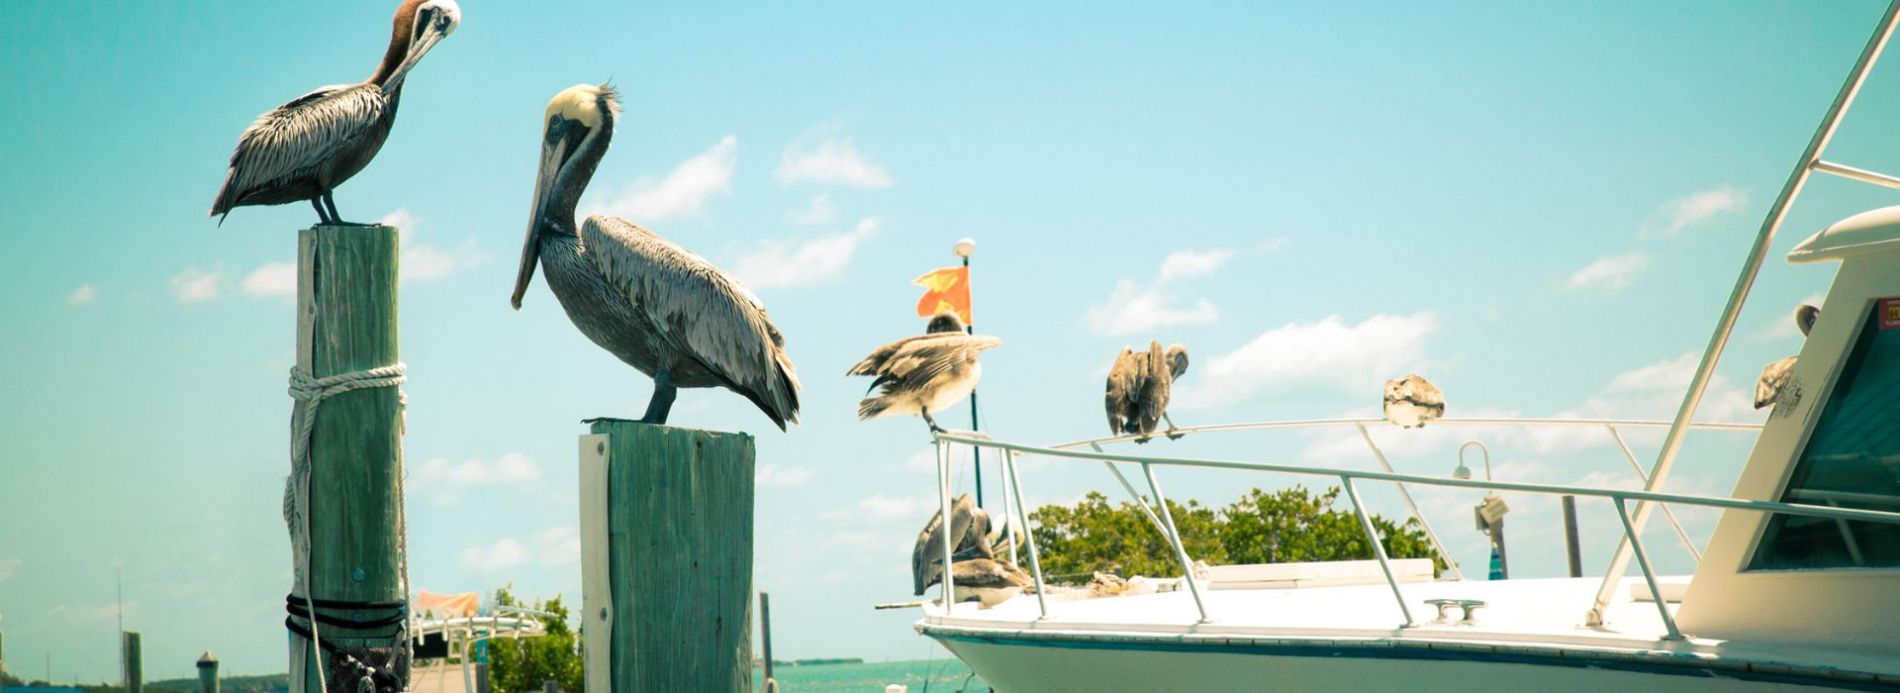 birds on fishing doc on marco island